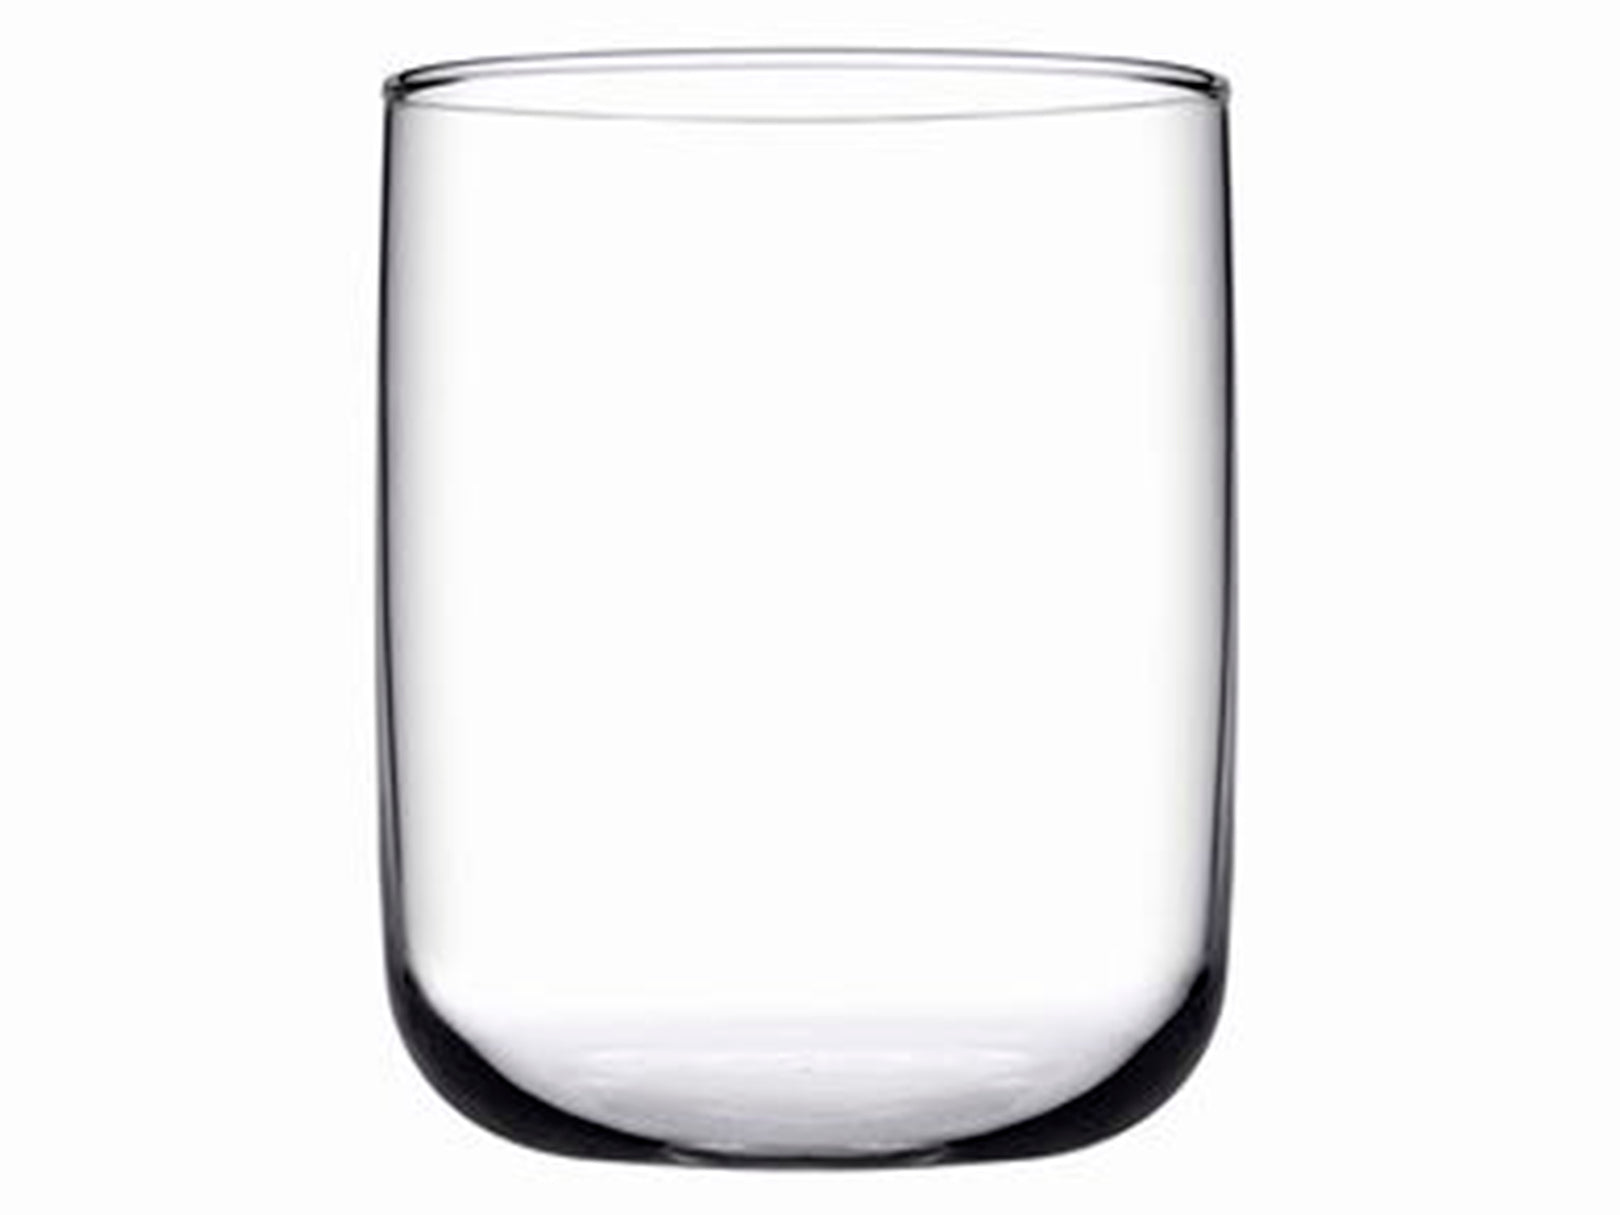 Conserva tus copas de vidrio limpias y libres de olores